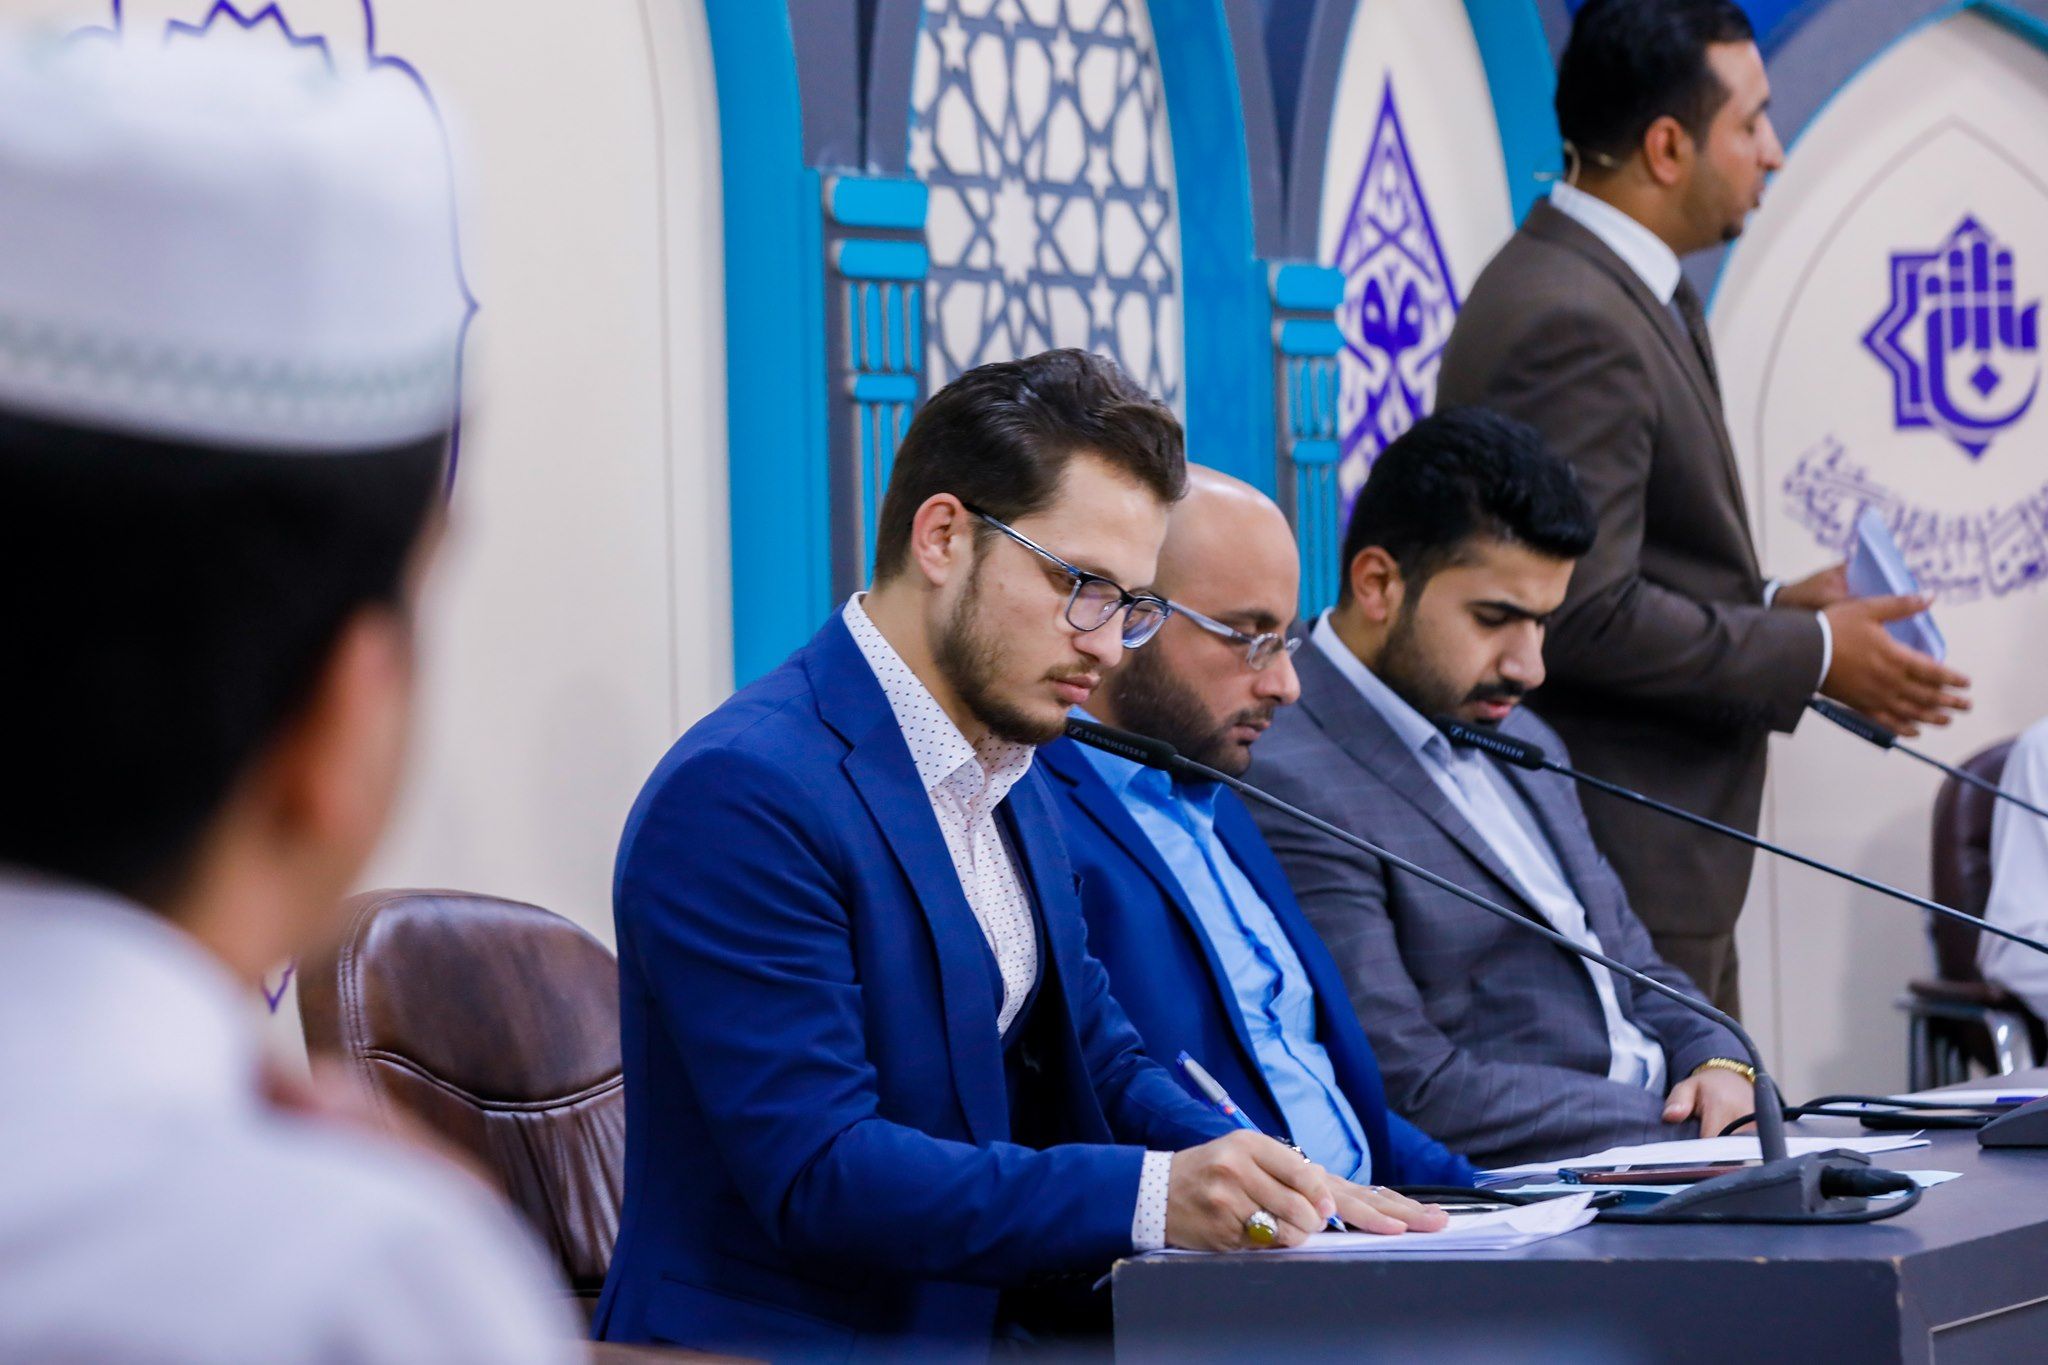 مركز المشاريع القرآنية يقيم مسابقة قرآنية فرقية خاصة بطلبة مشروع أمير القراء الوطني